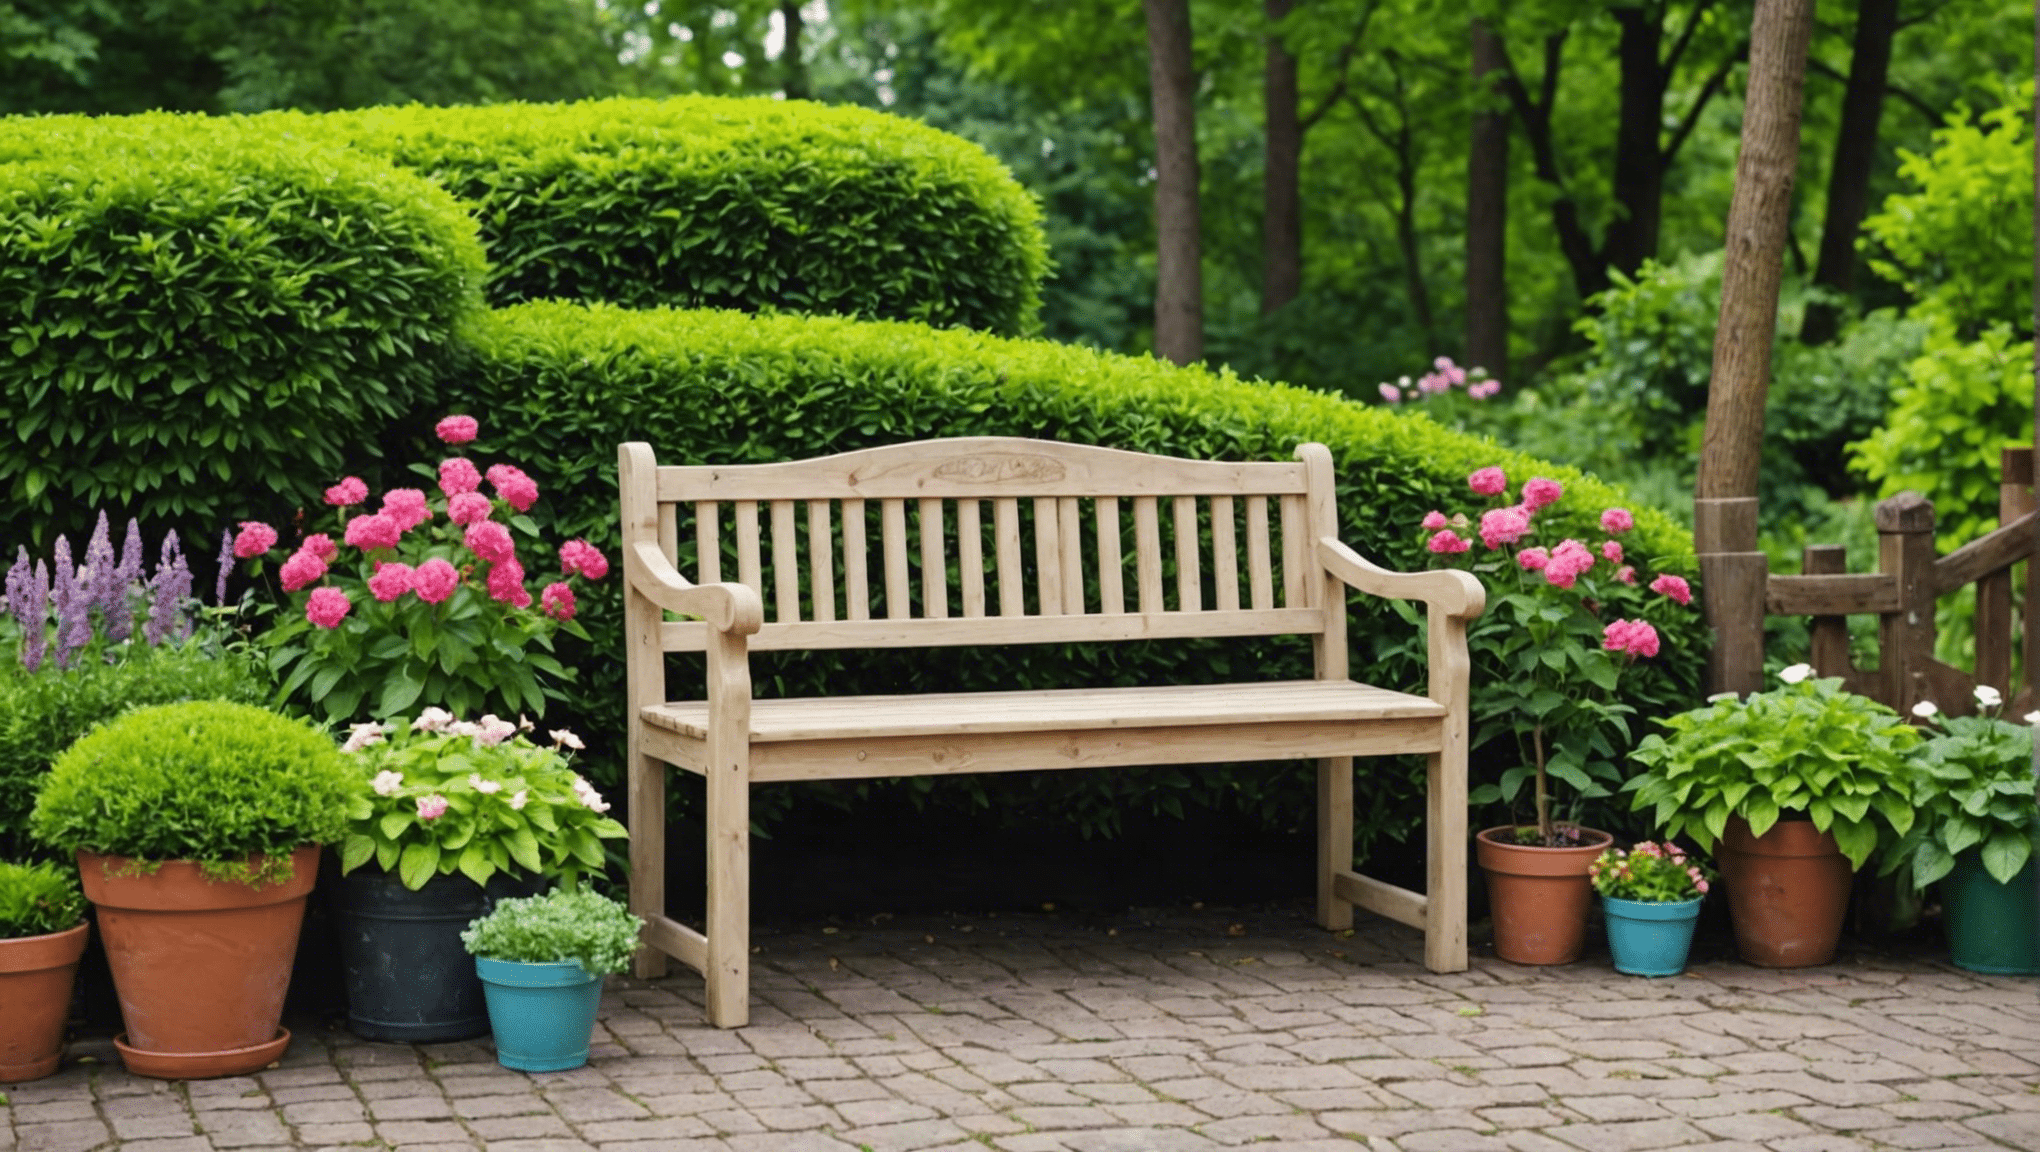 objavte inšpiratívne a funkčné nápady na záhradné lavičky, ktoré vám pomôžu priniesť kreativitu do vášho vonkajšieho priestoru.